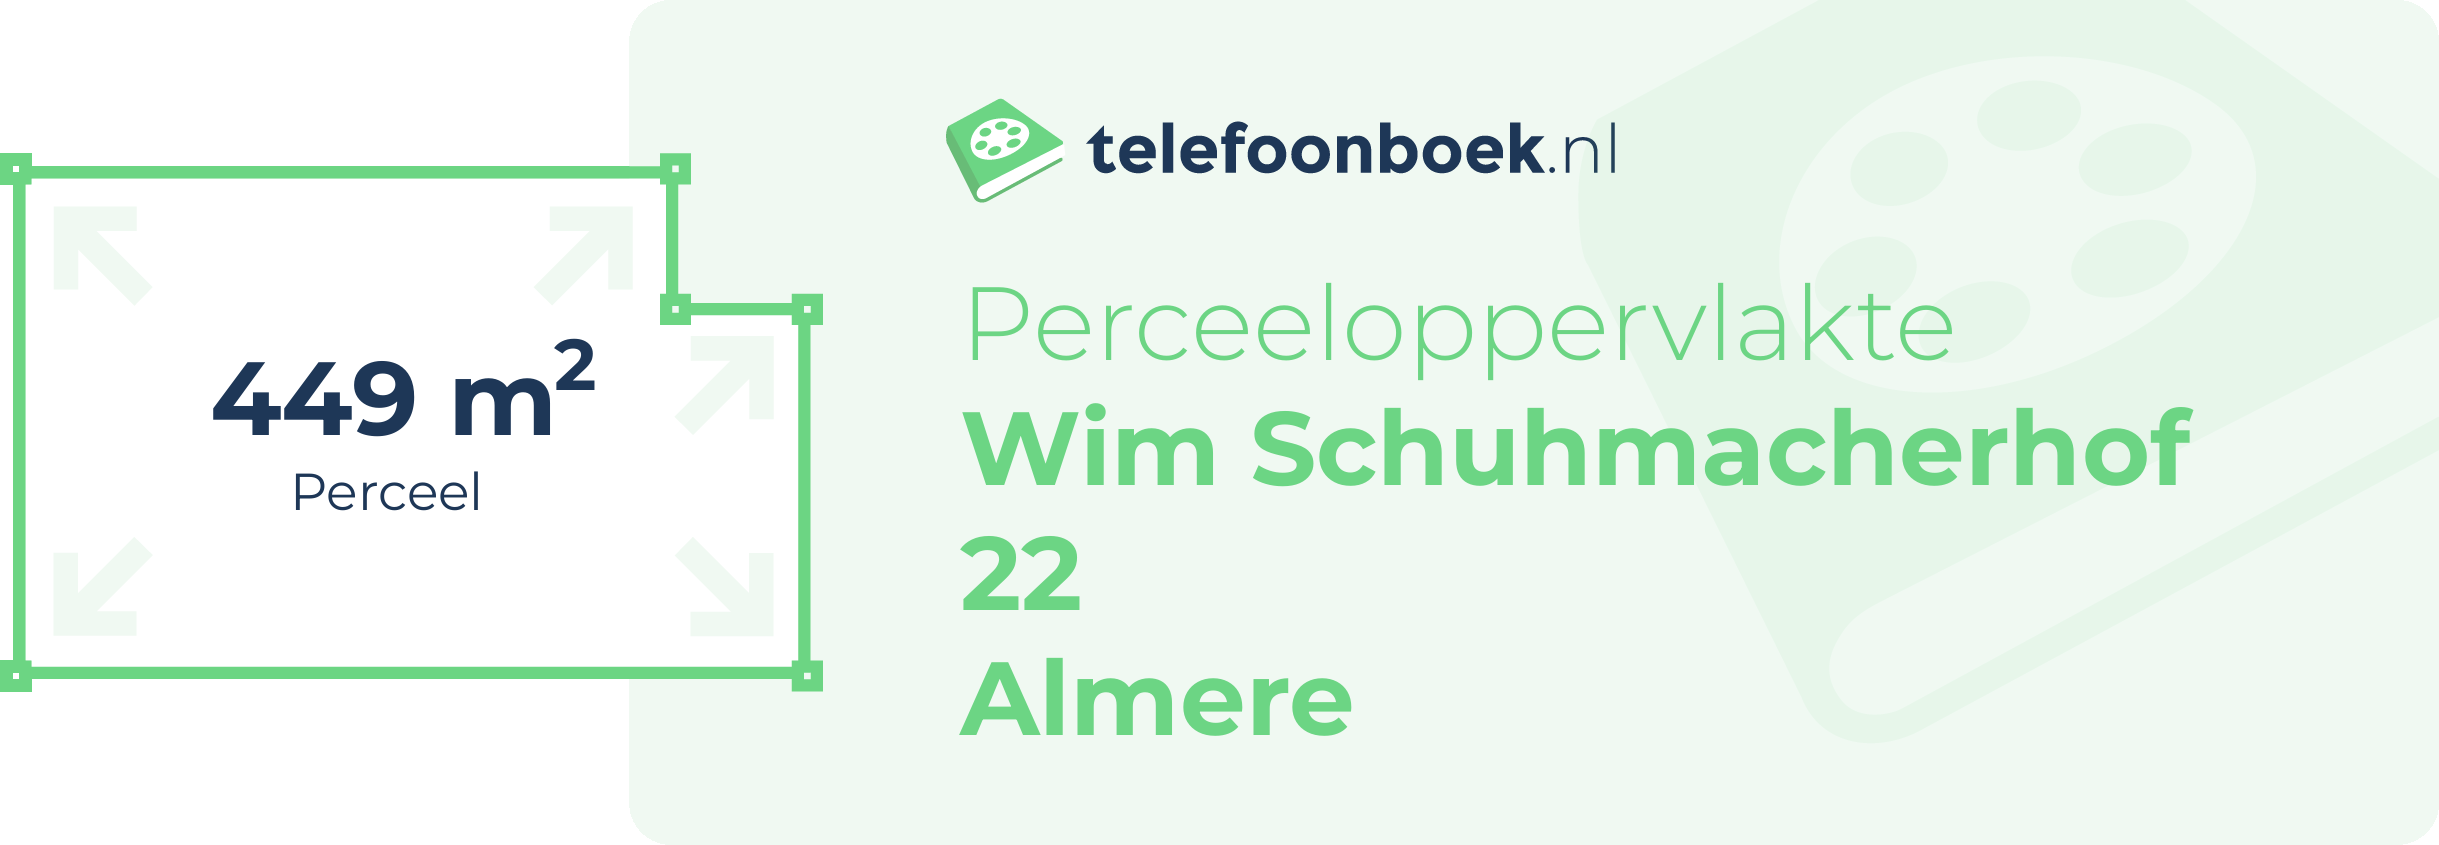 Perceeloppervlakte Wim Schuhmacherhof 22 Almere